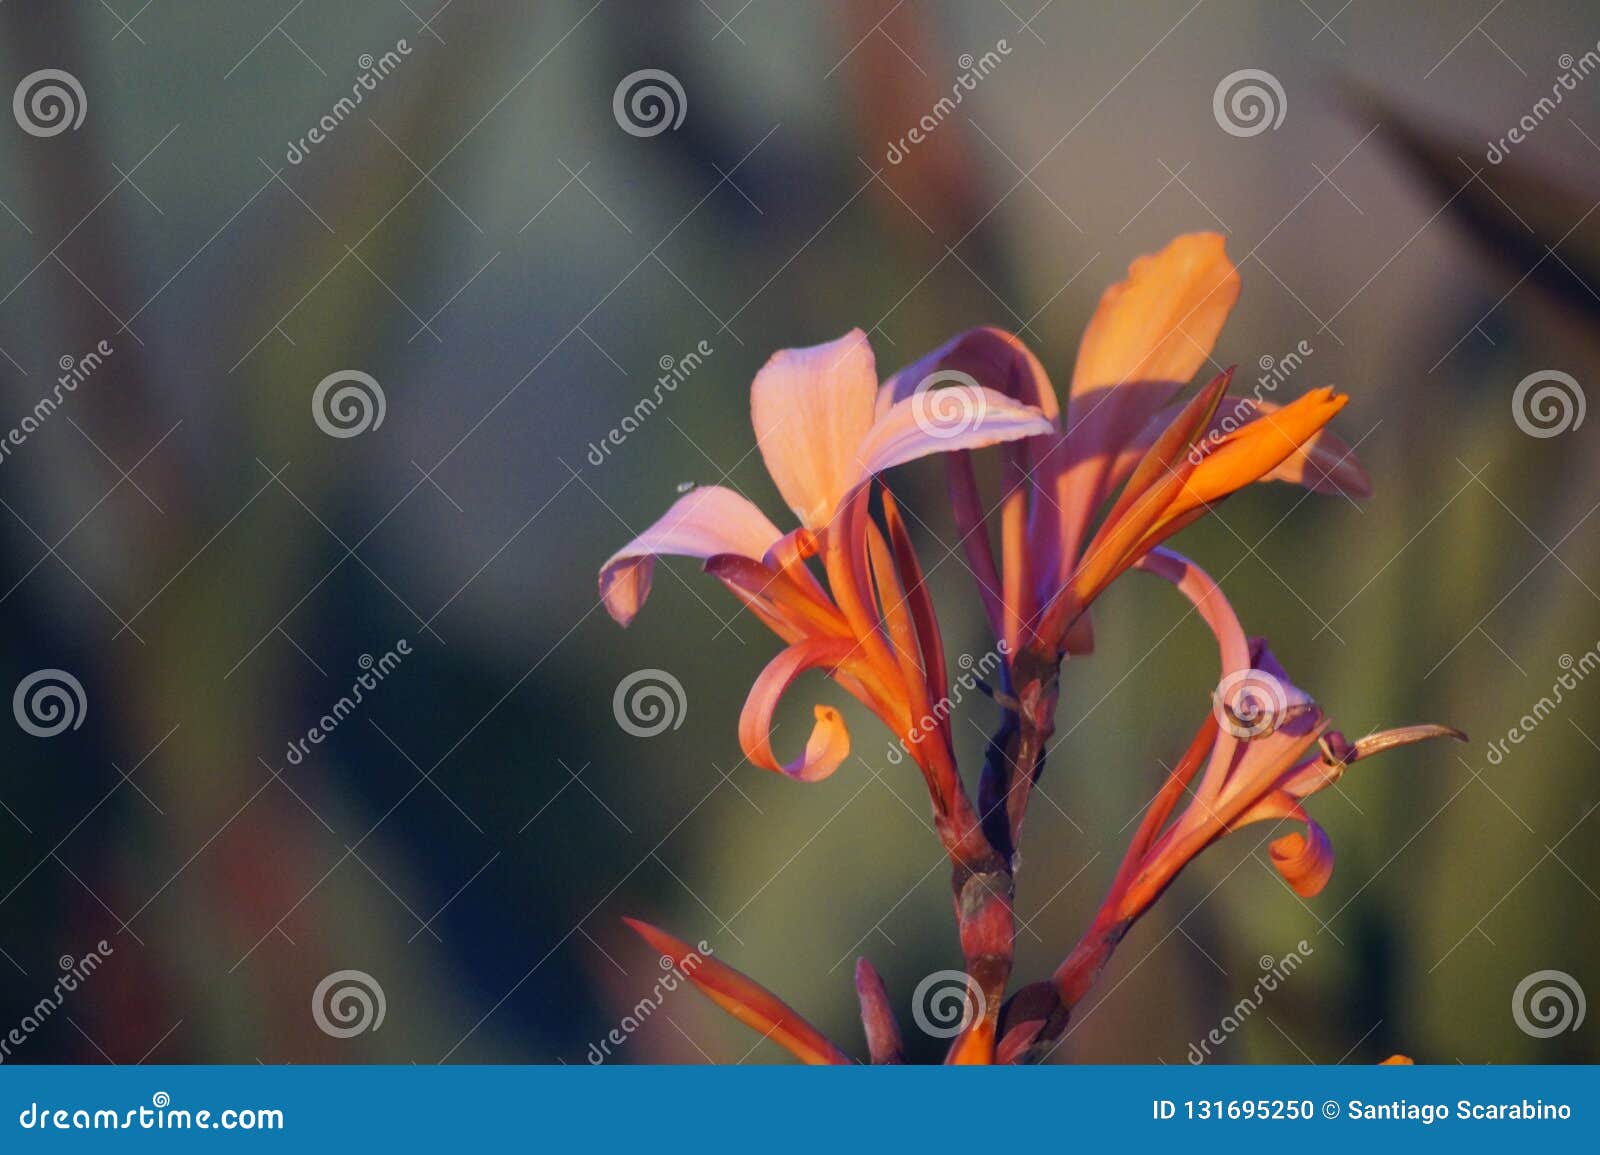 strelitzia reginae flower closeup